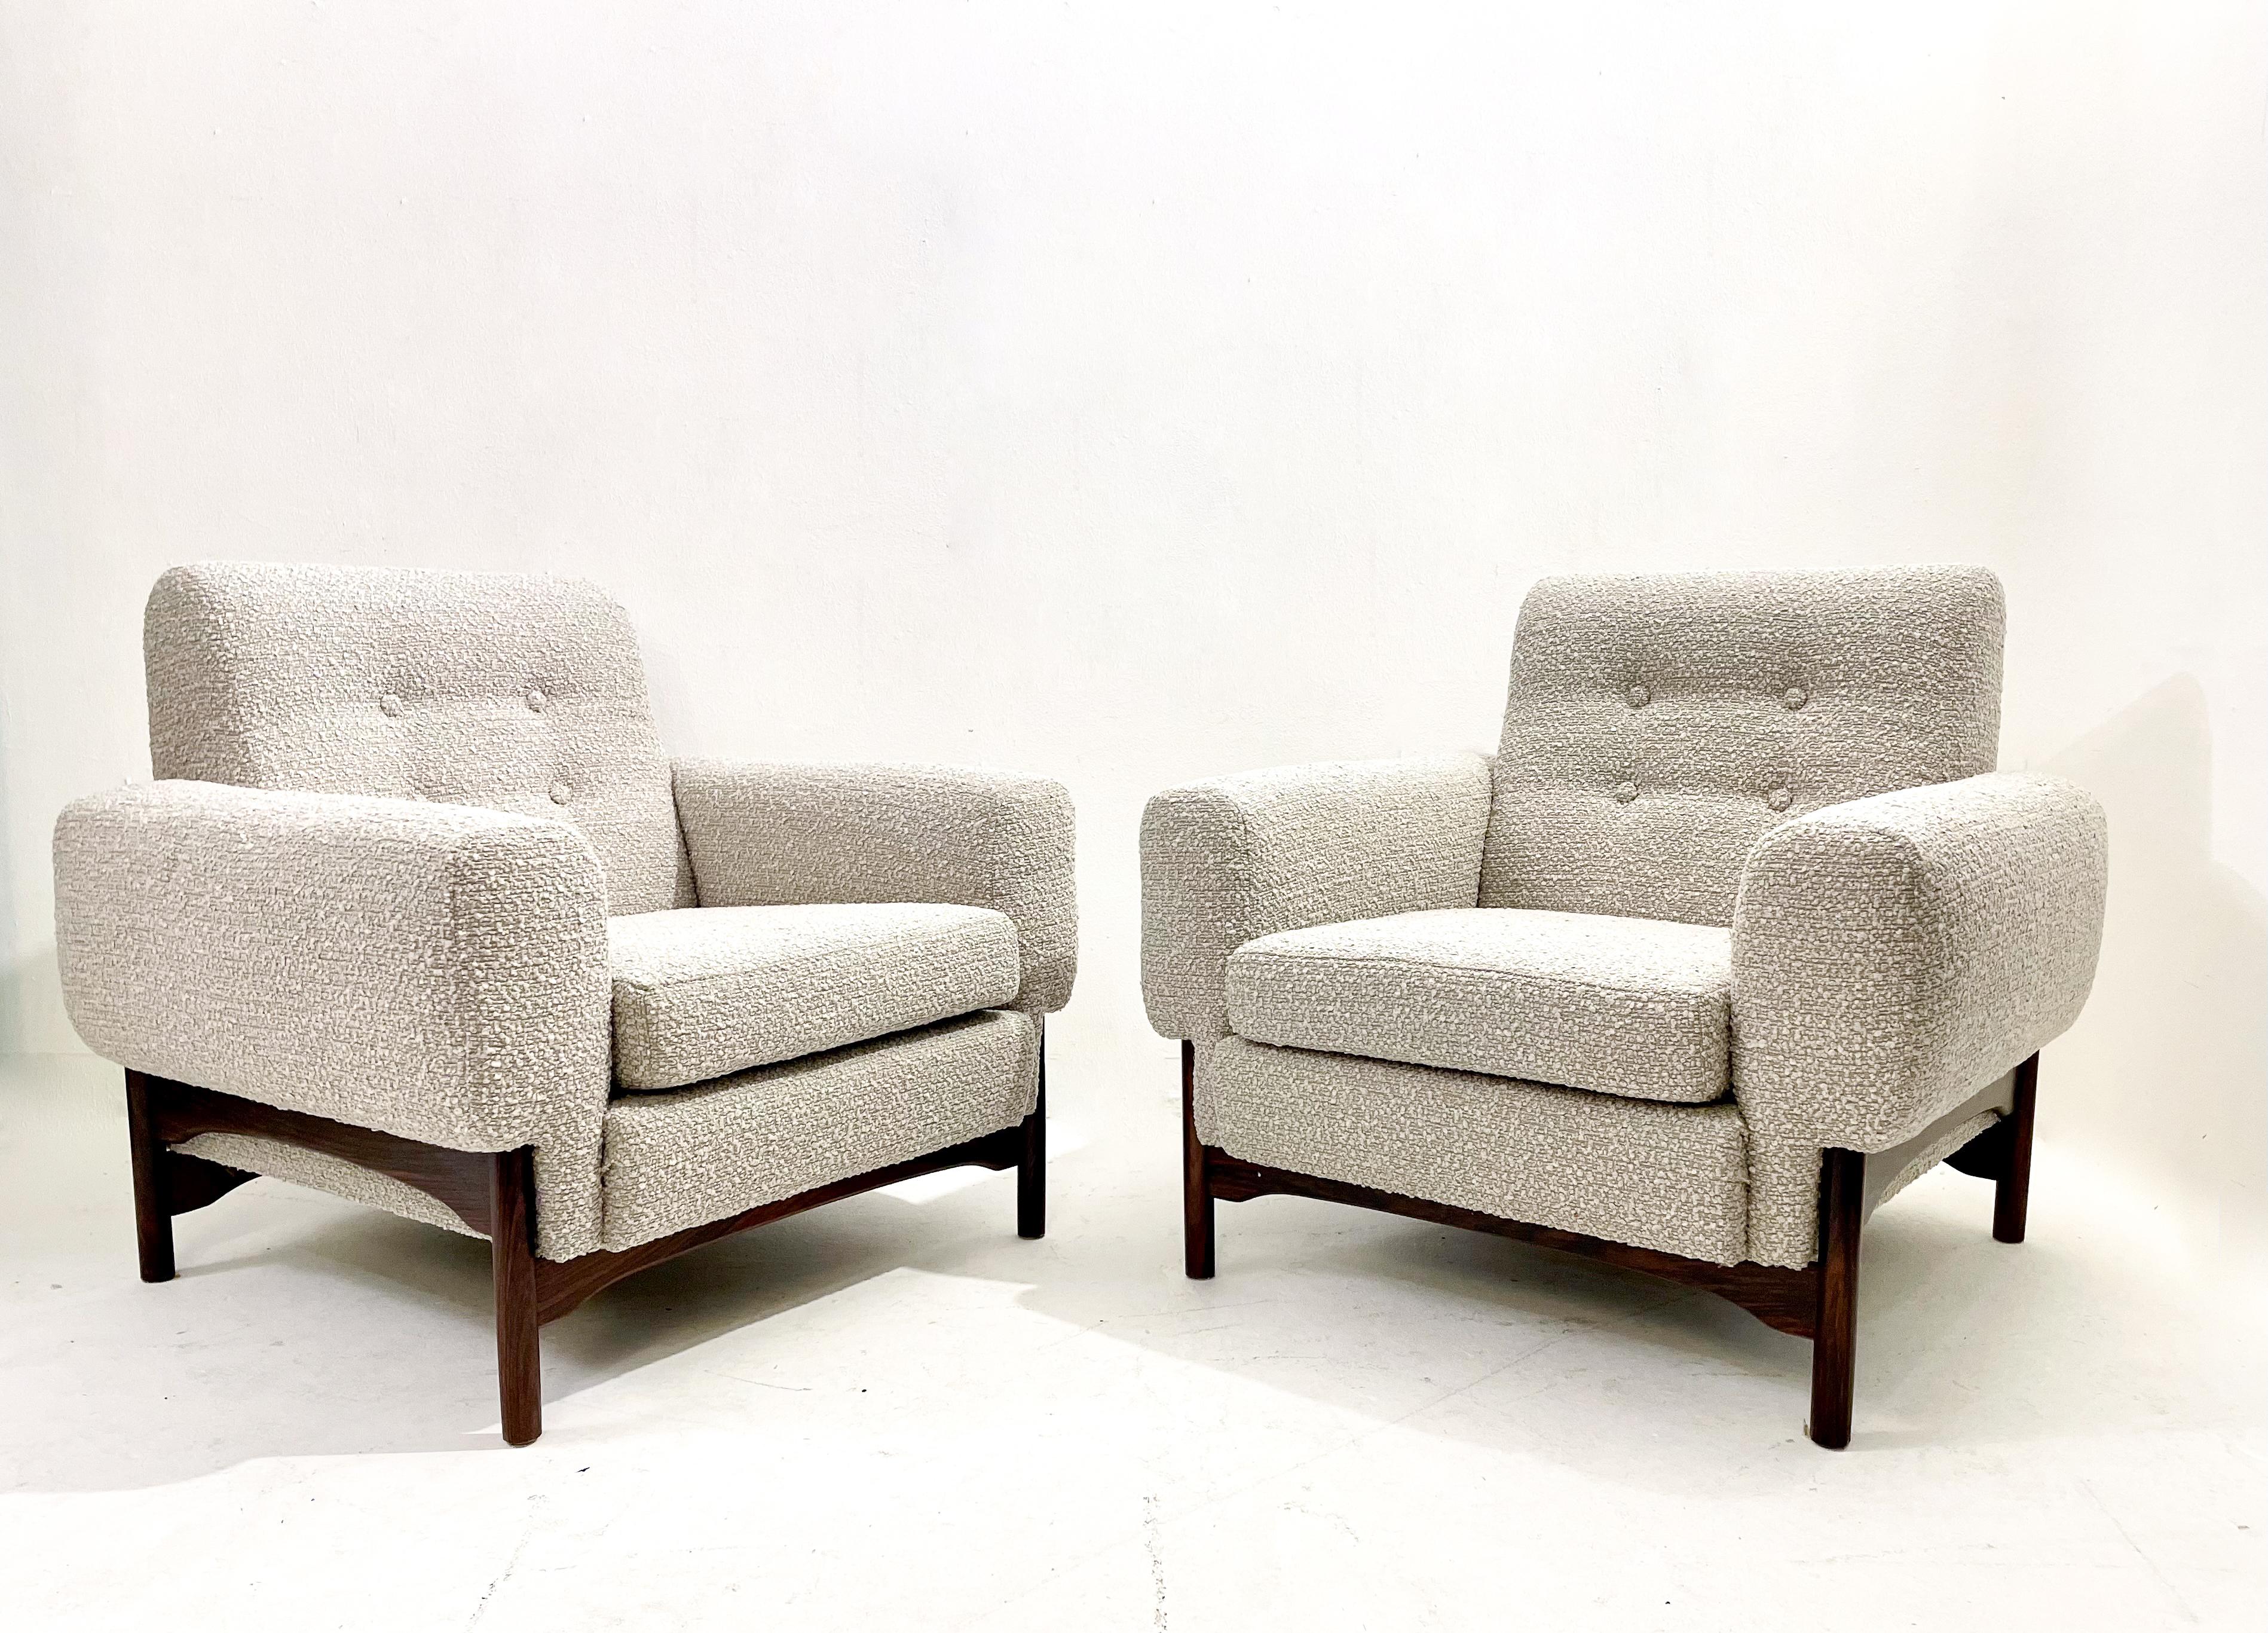 Paire de fauteuils italiens de style moderne du milieu du siècle, tissu gris, années 1960 - 2 paires disponibles.

  